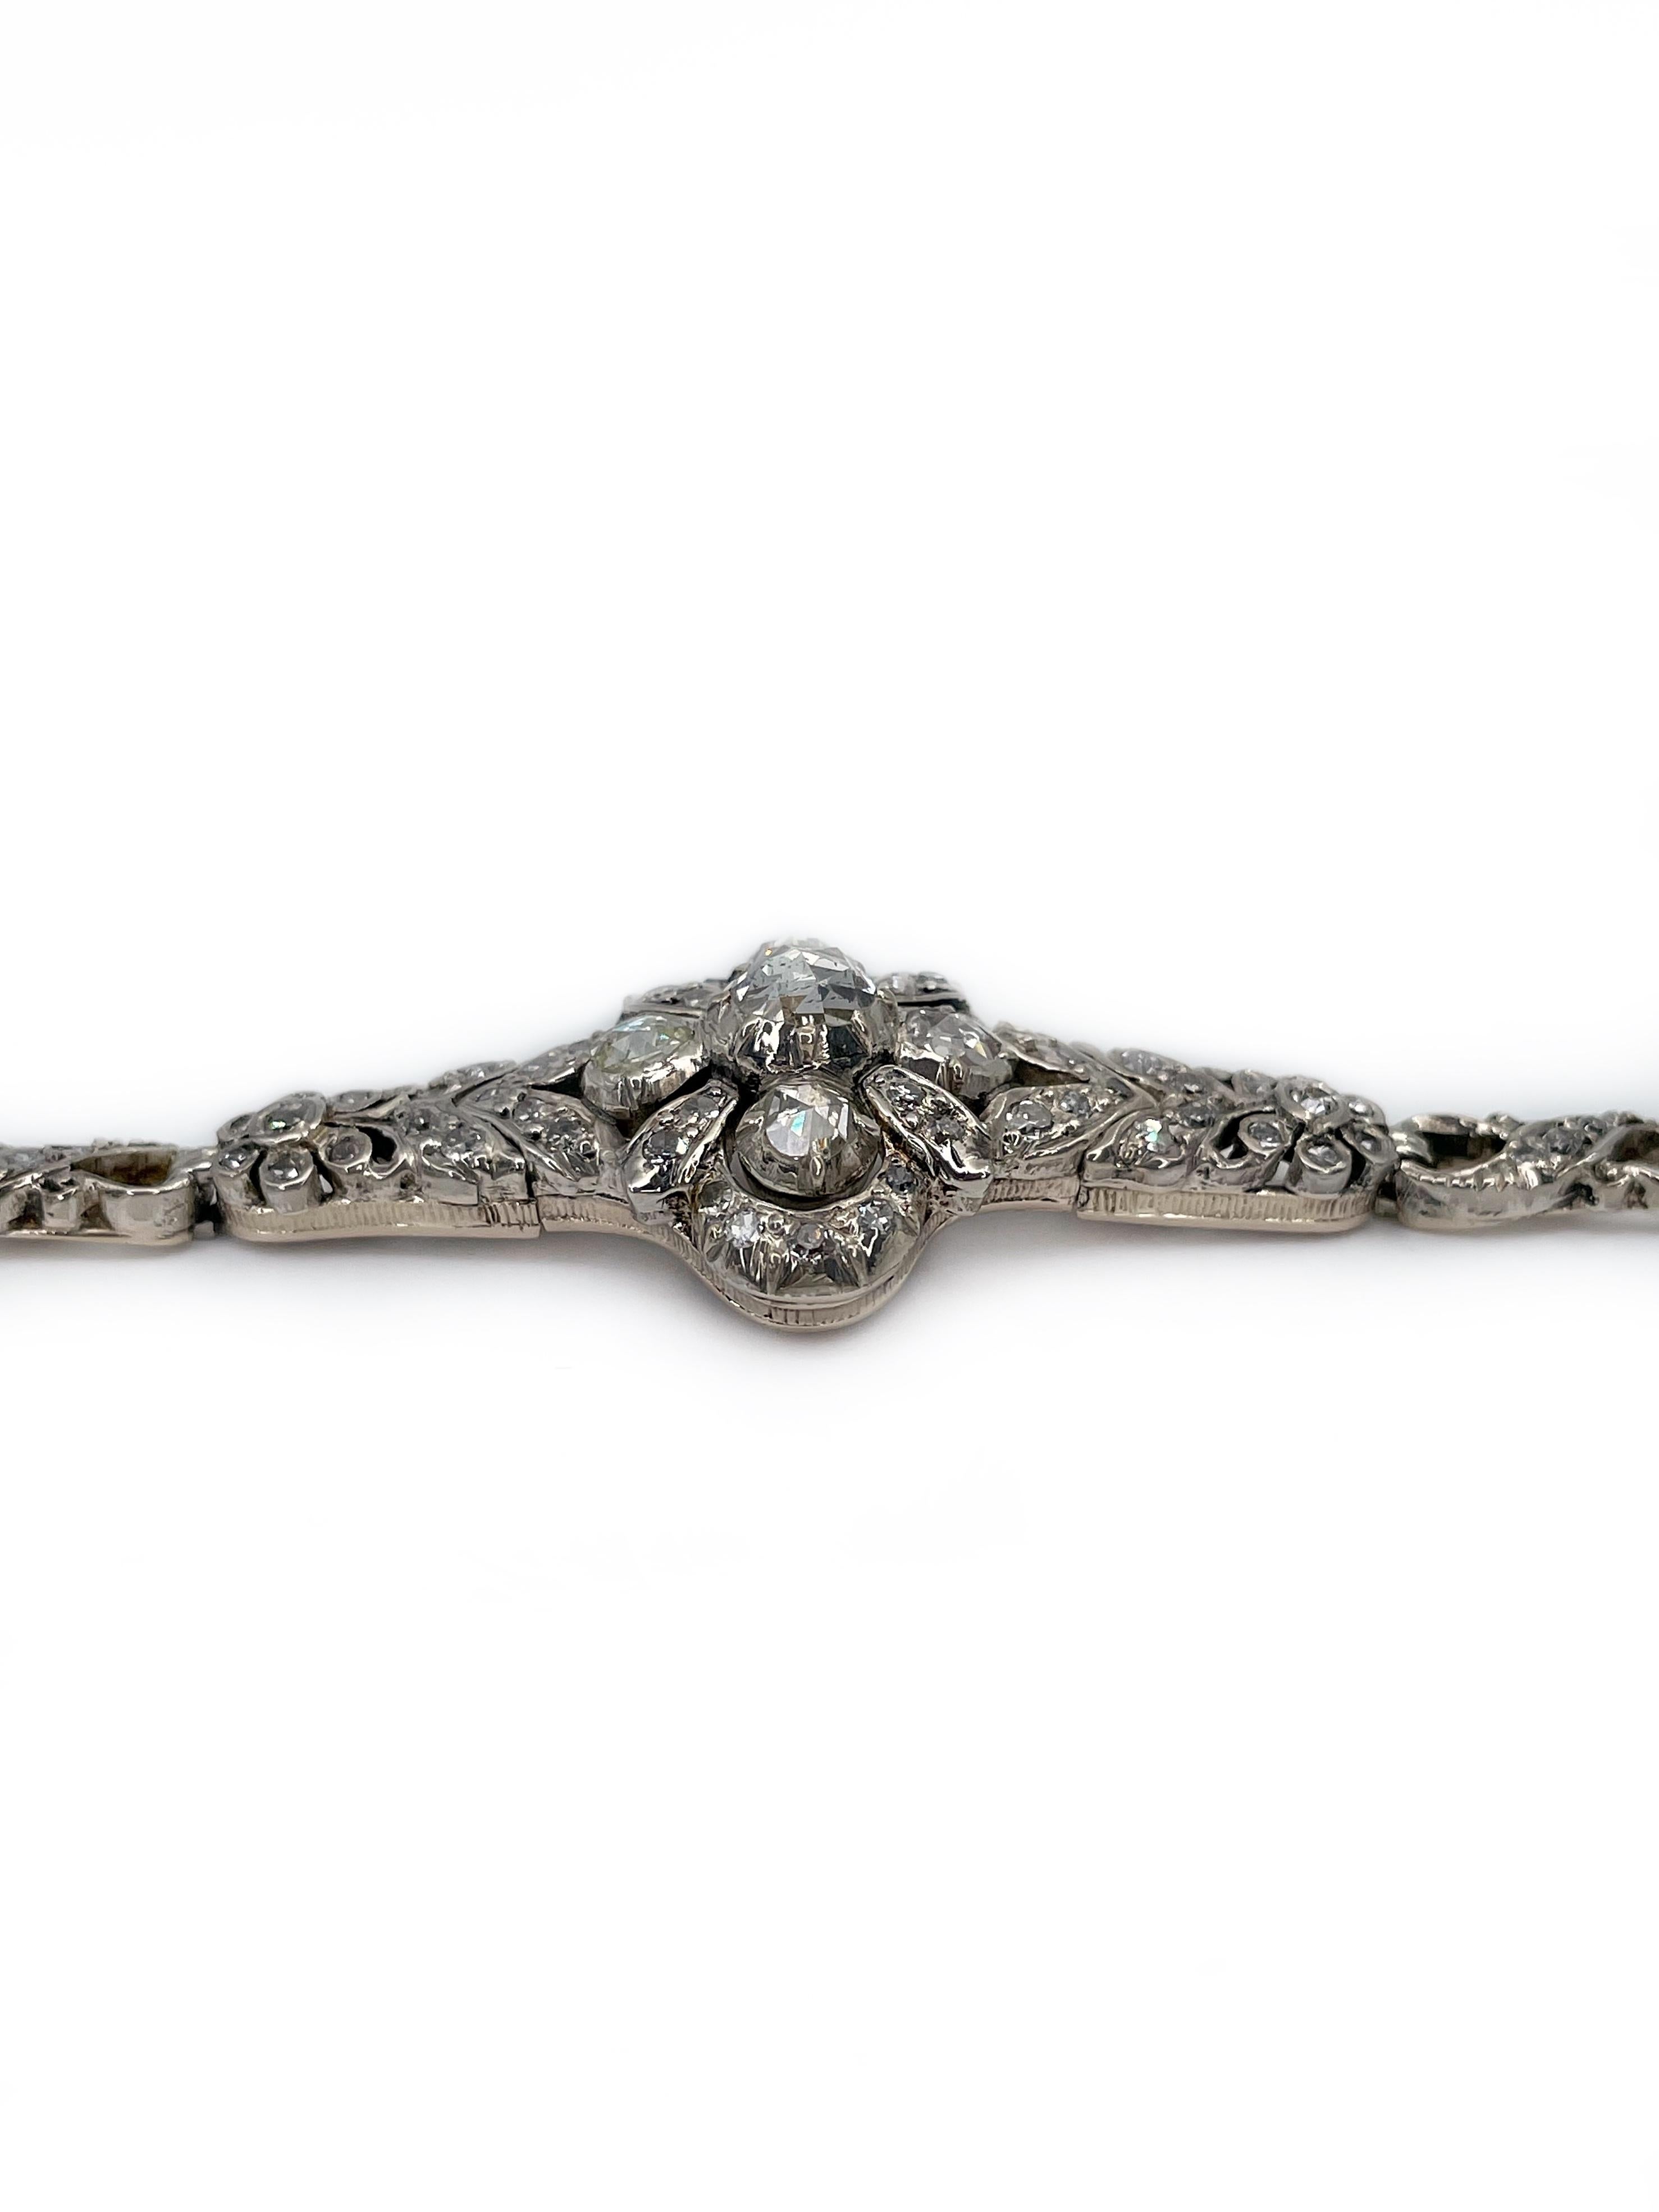 Women's Antique Victorian 14 Karat Gold Rose Cut Diamond Floral Design Bracelet